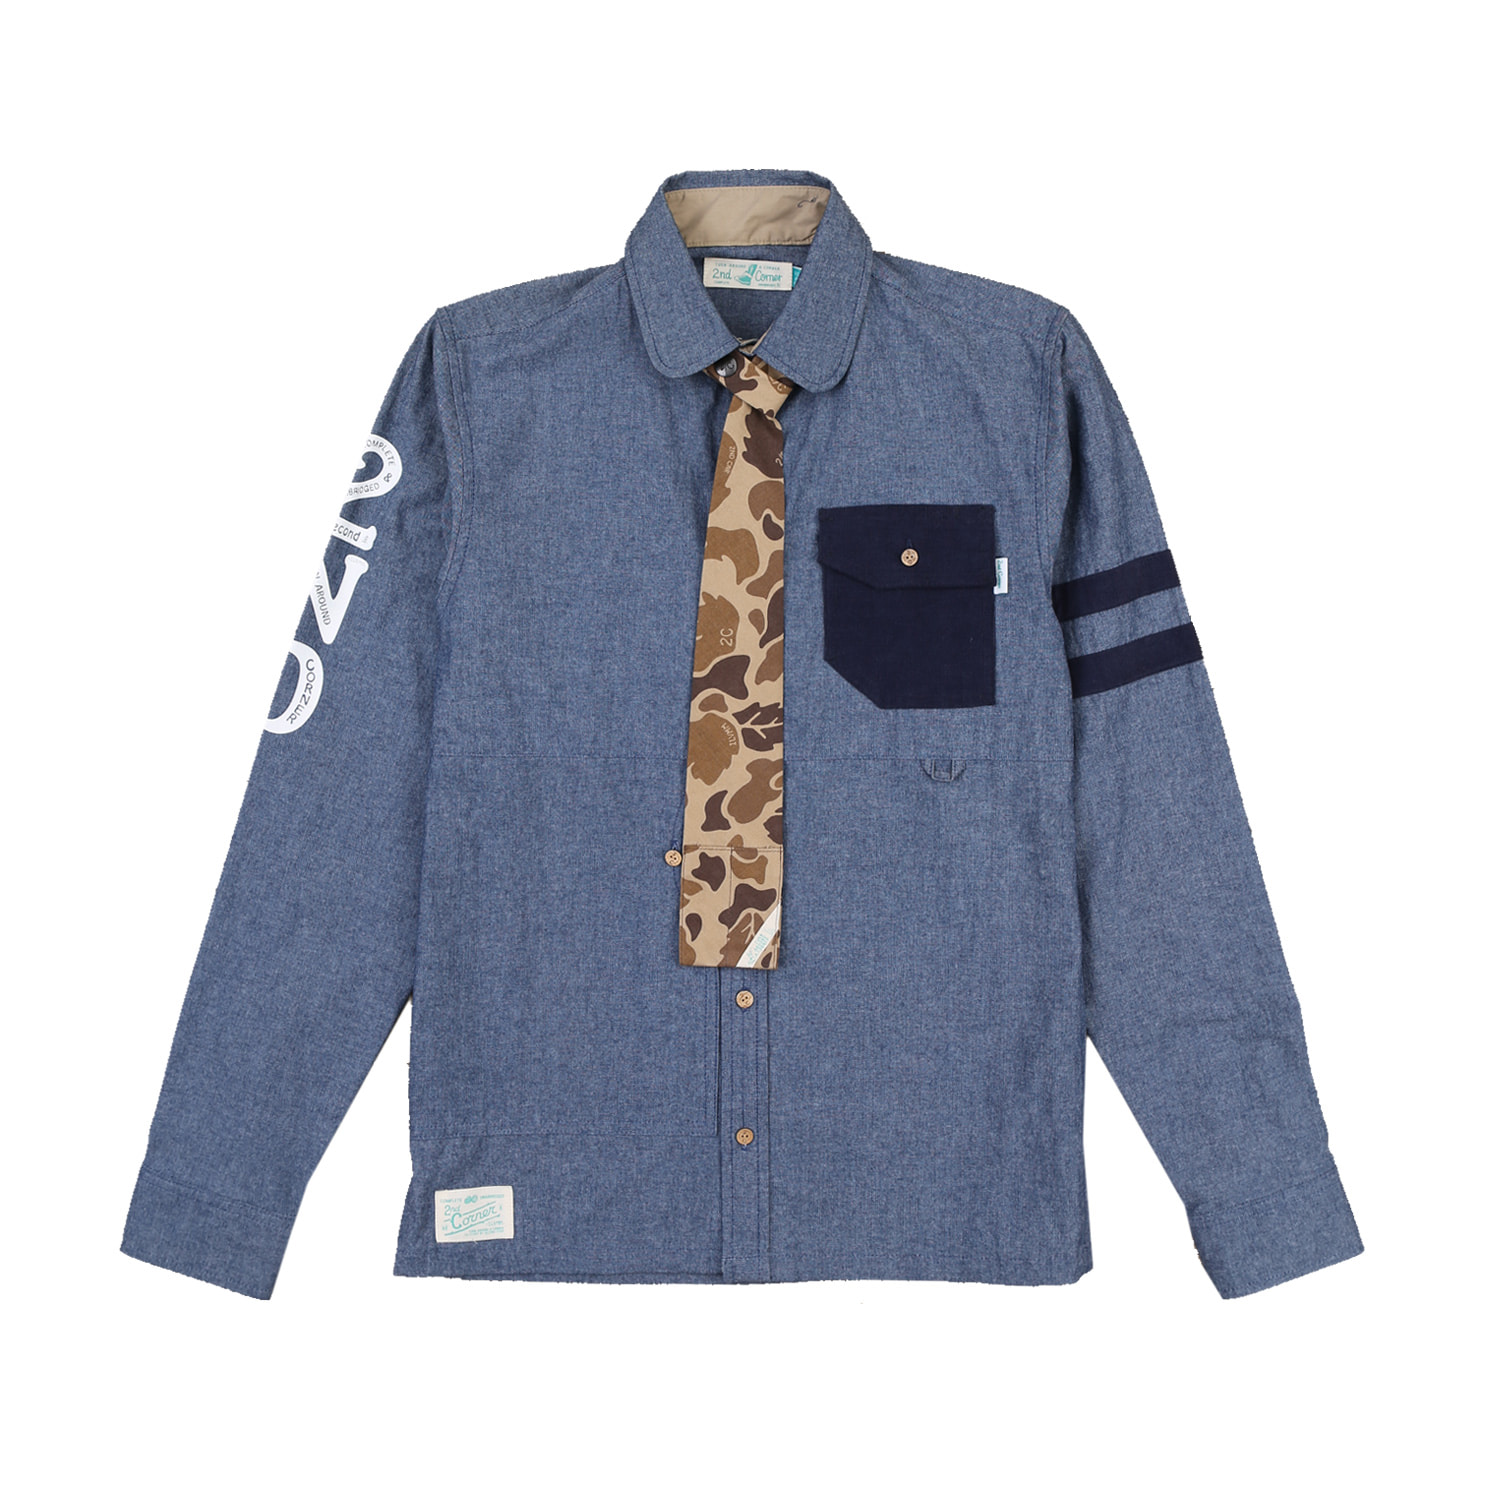 세컨드코너 2C 남성 스트릿 셔츠 + 카모 그래픽 넥타이 / 봄-가을 / 감각 아트웍 / 캐쥬얼 셔츠 Coors - D.Blue